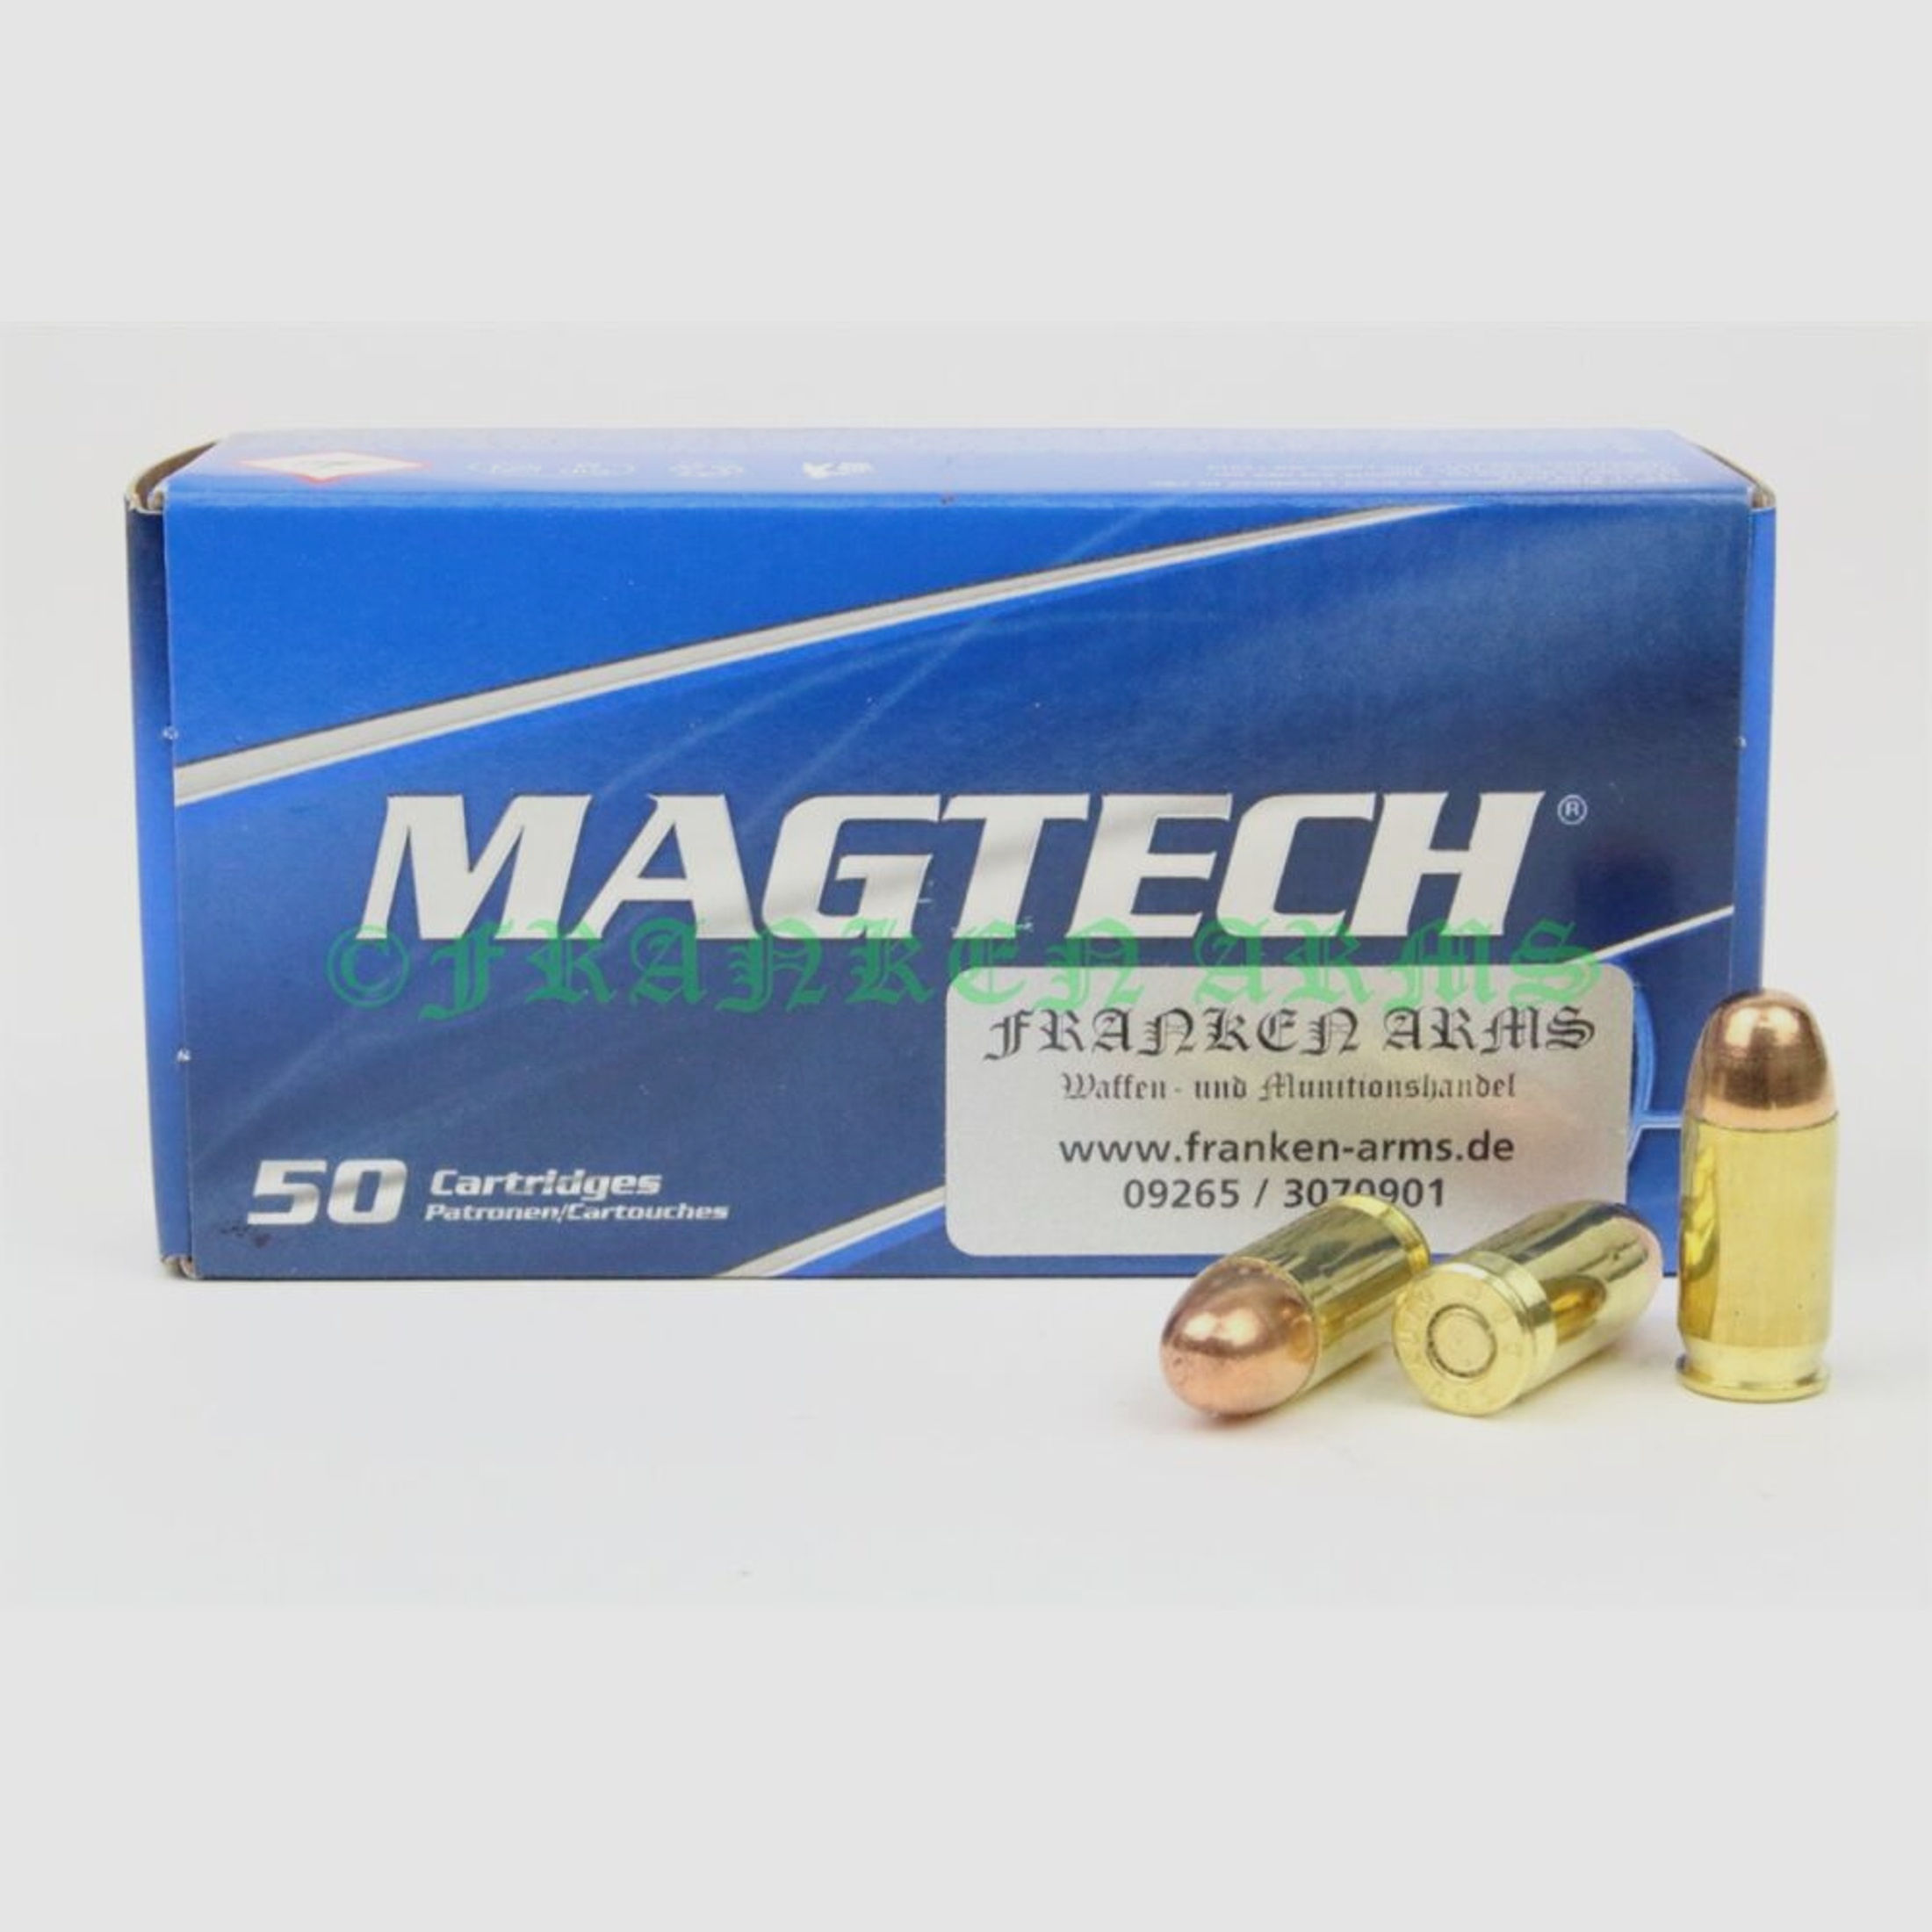 Magtech	 9mm kurz (.380 Auto) FMJ 95gr. 6,15g 50 Stück Staffelpreise